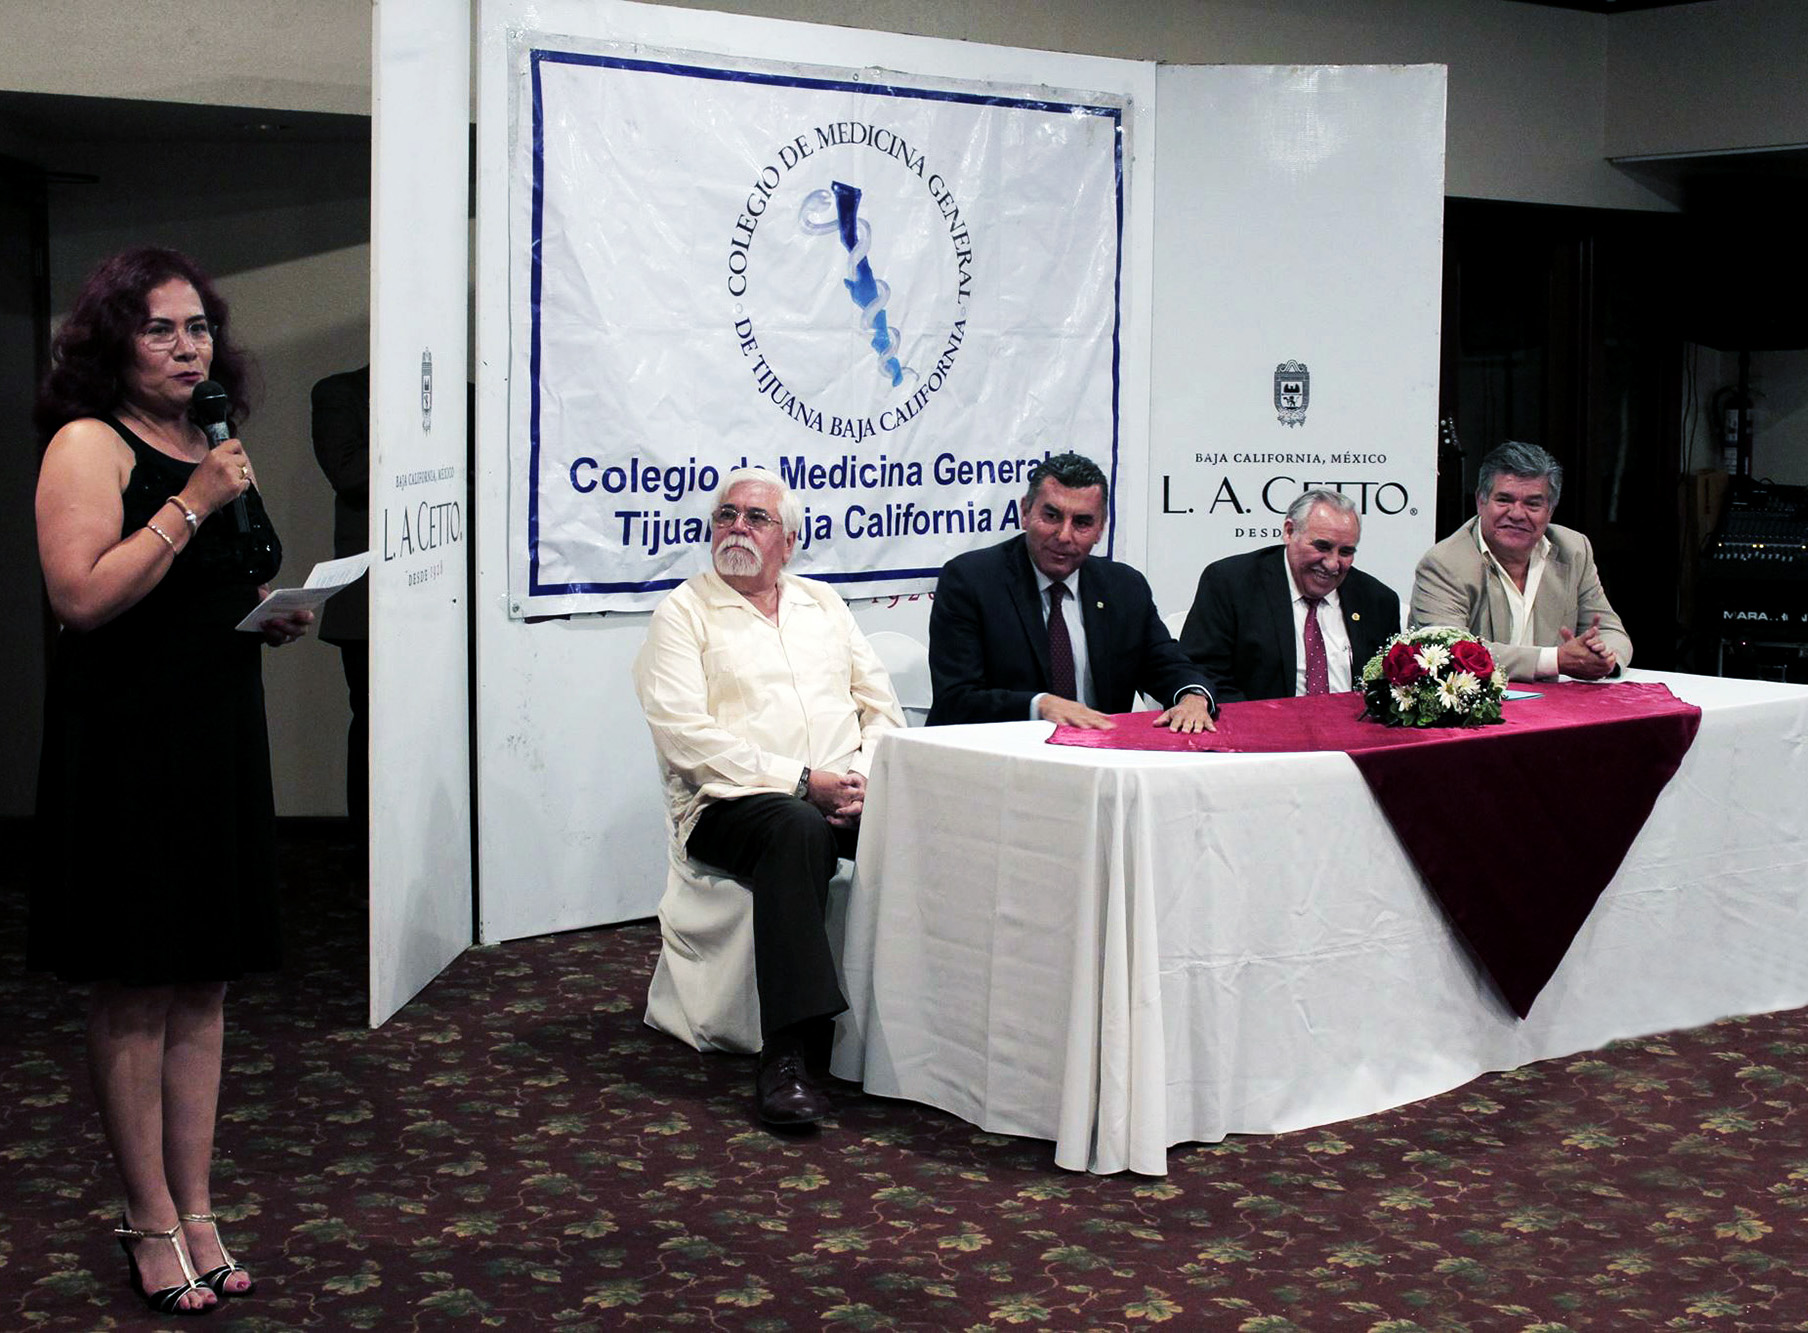 Firman convenio de colaboracion el Colegio de medicina general de Tijuana y Camebc